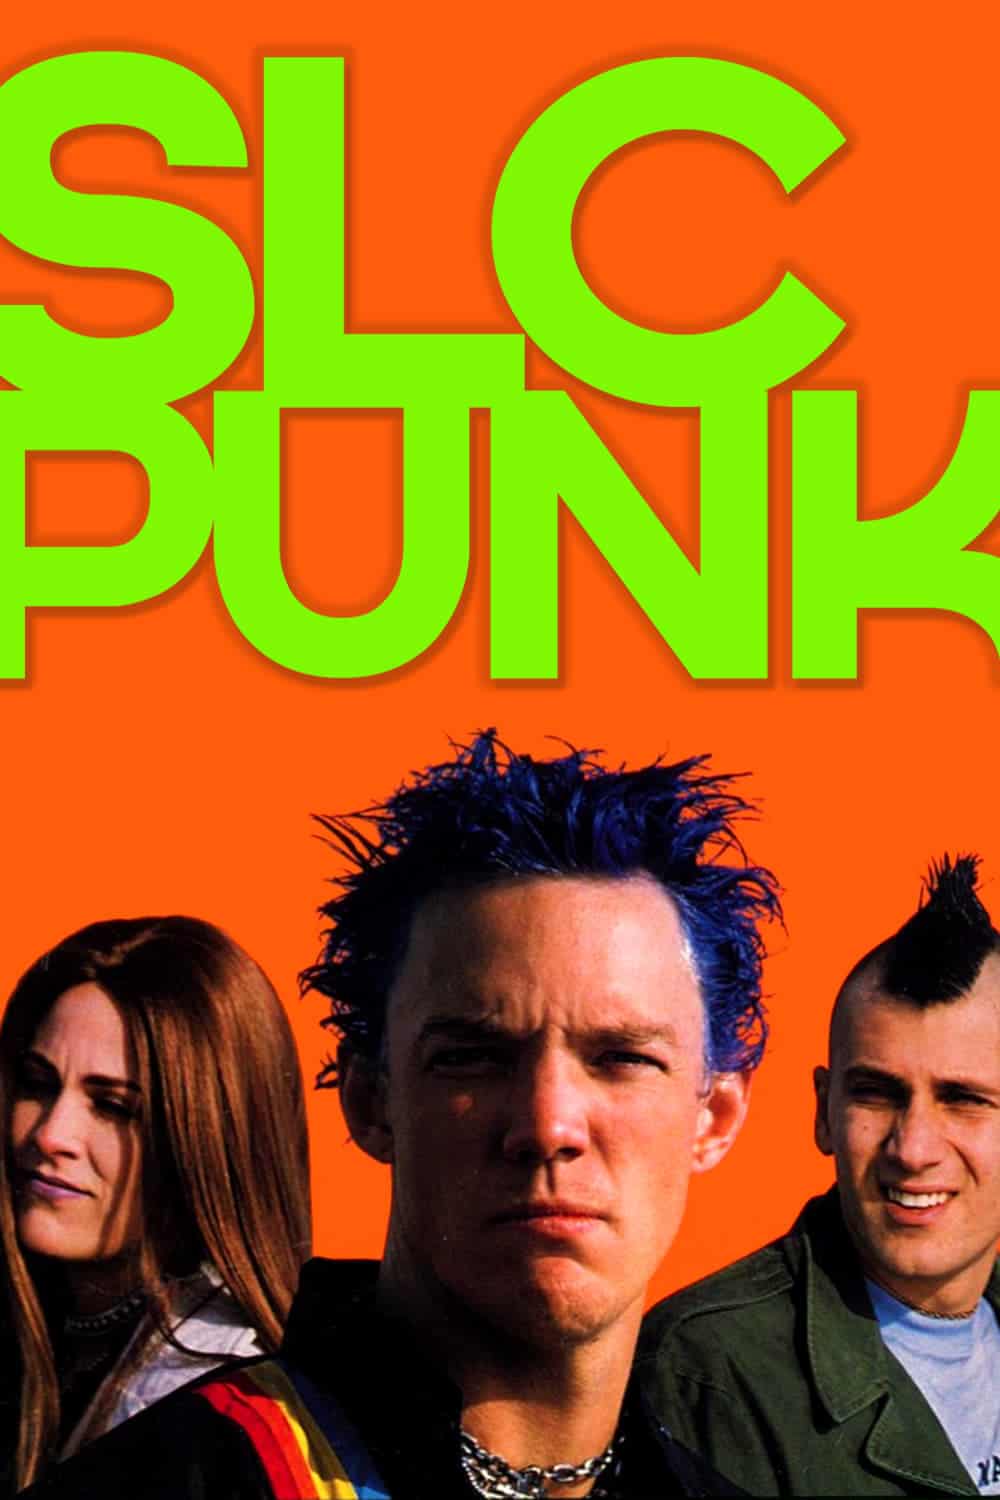 Plakat von "Punk!"